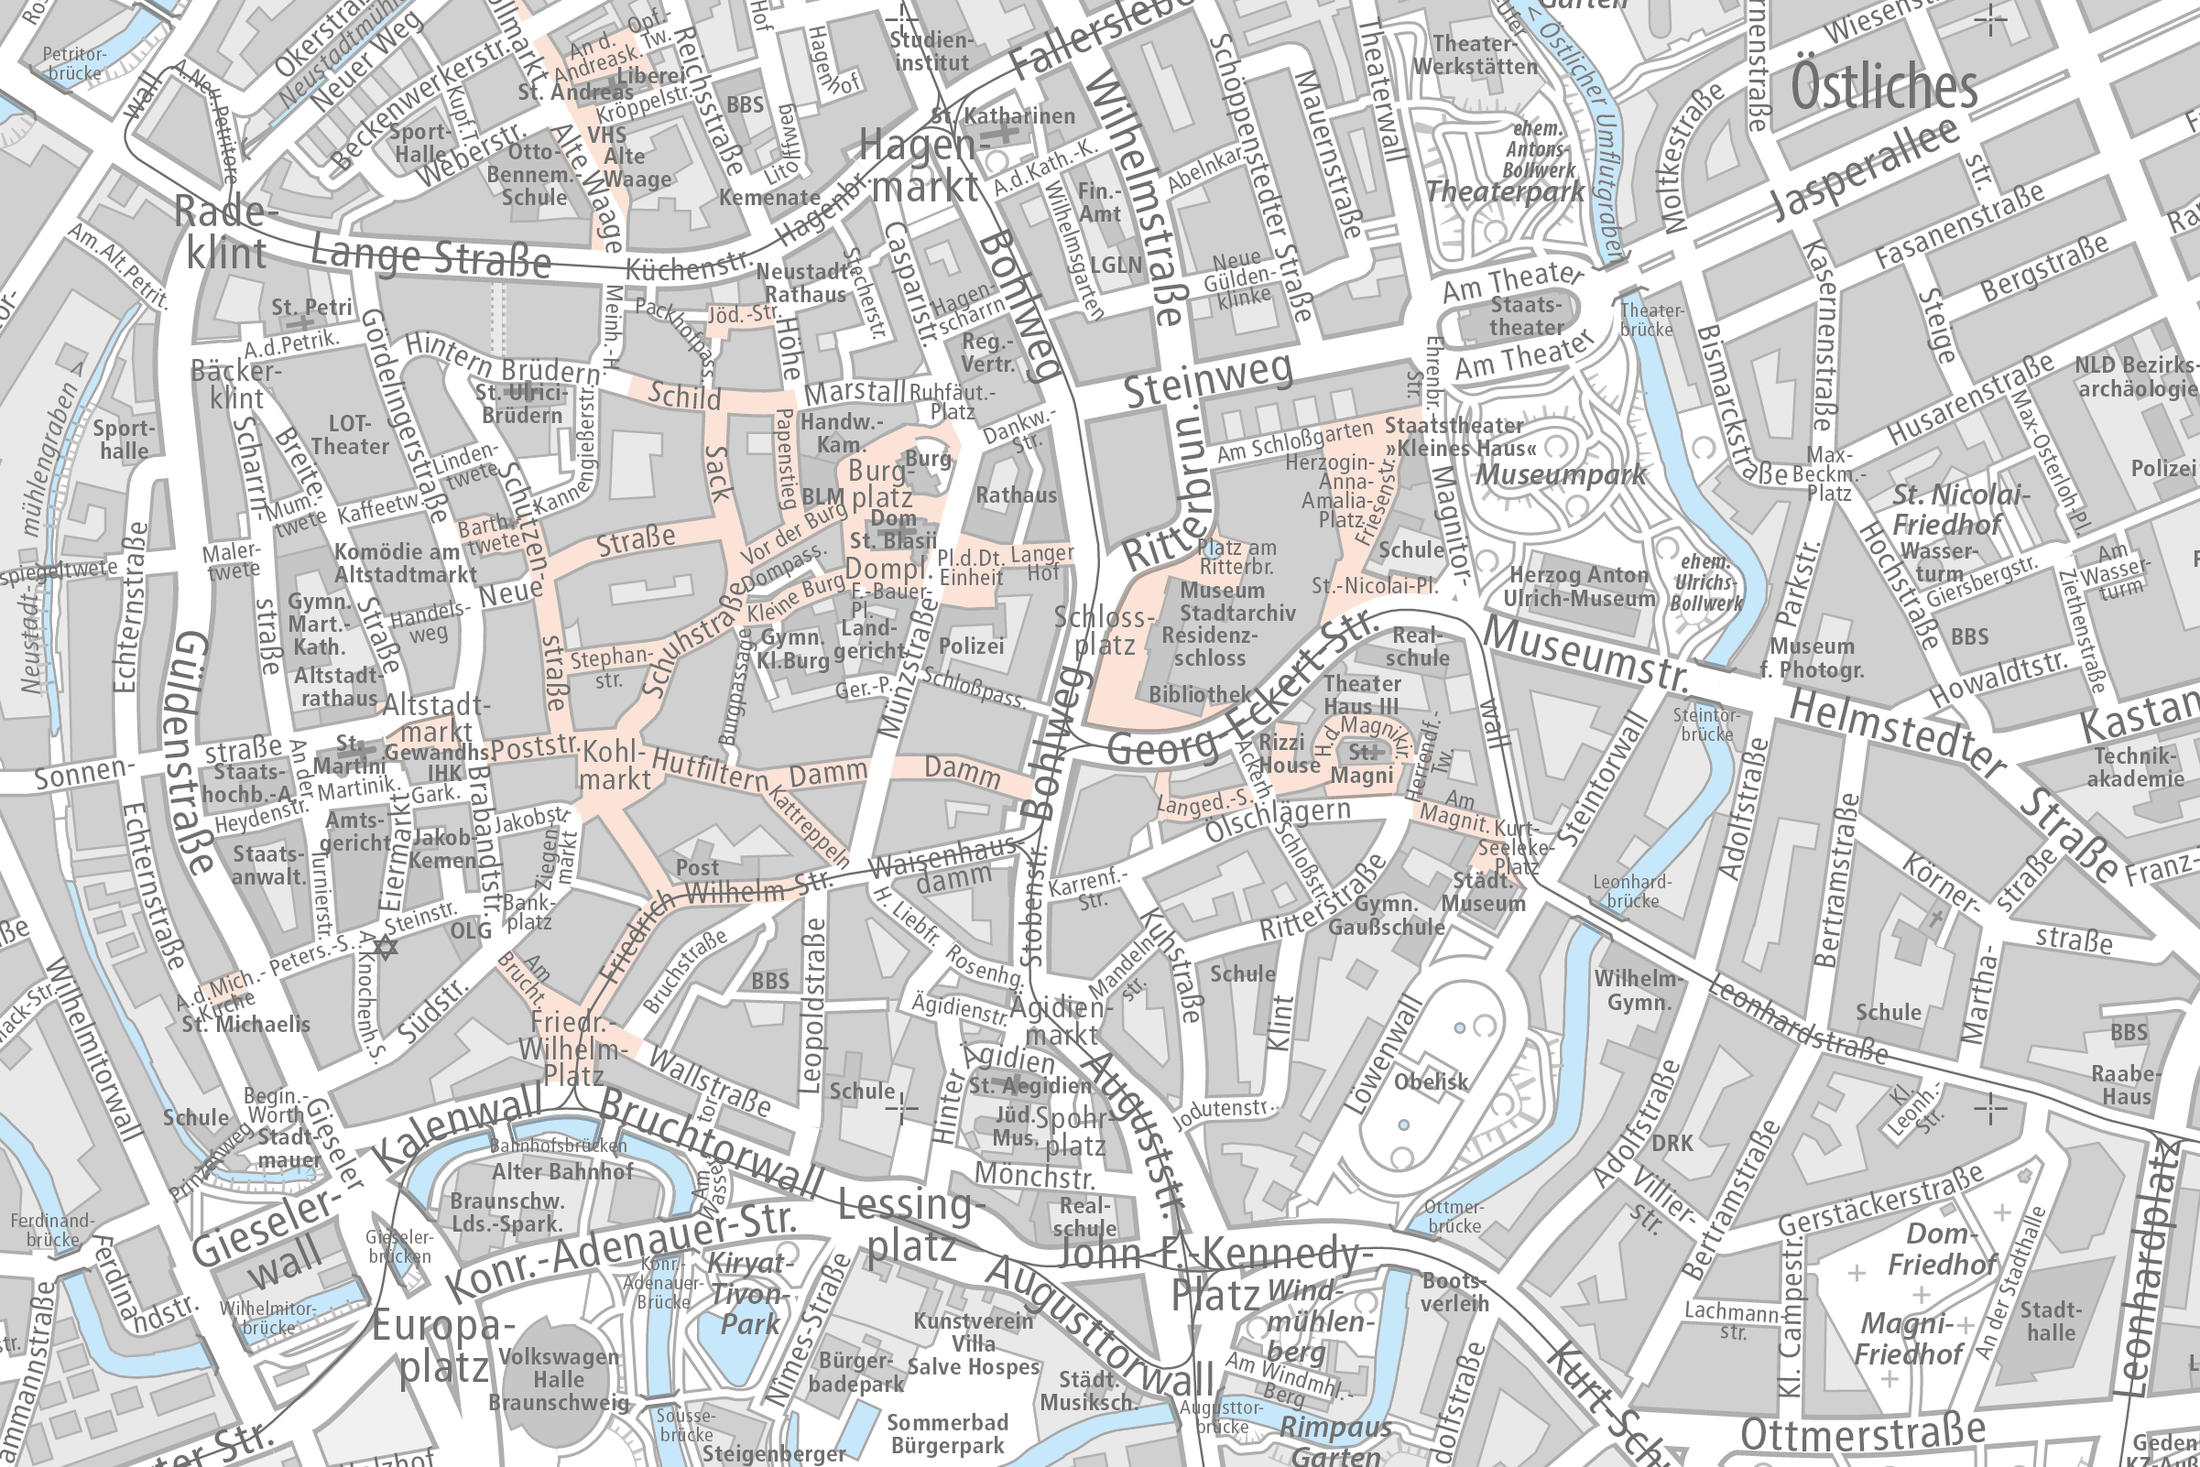 Innenstadtkarte 1 : 10.000 - mit generalisierter Gebäudedarstellung